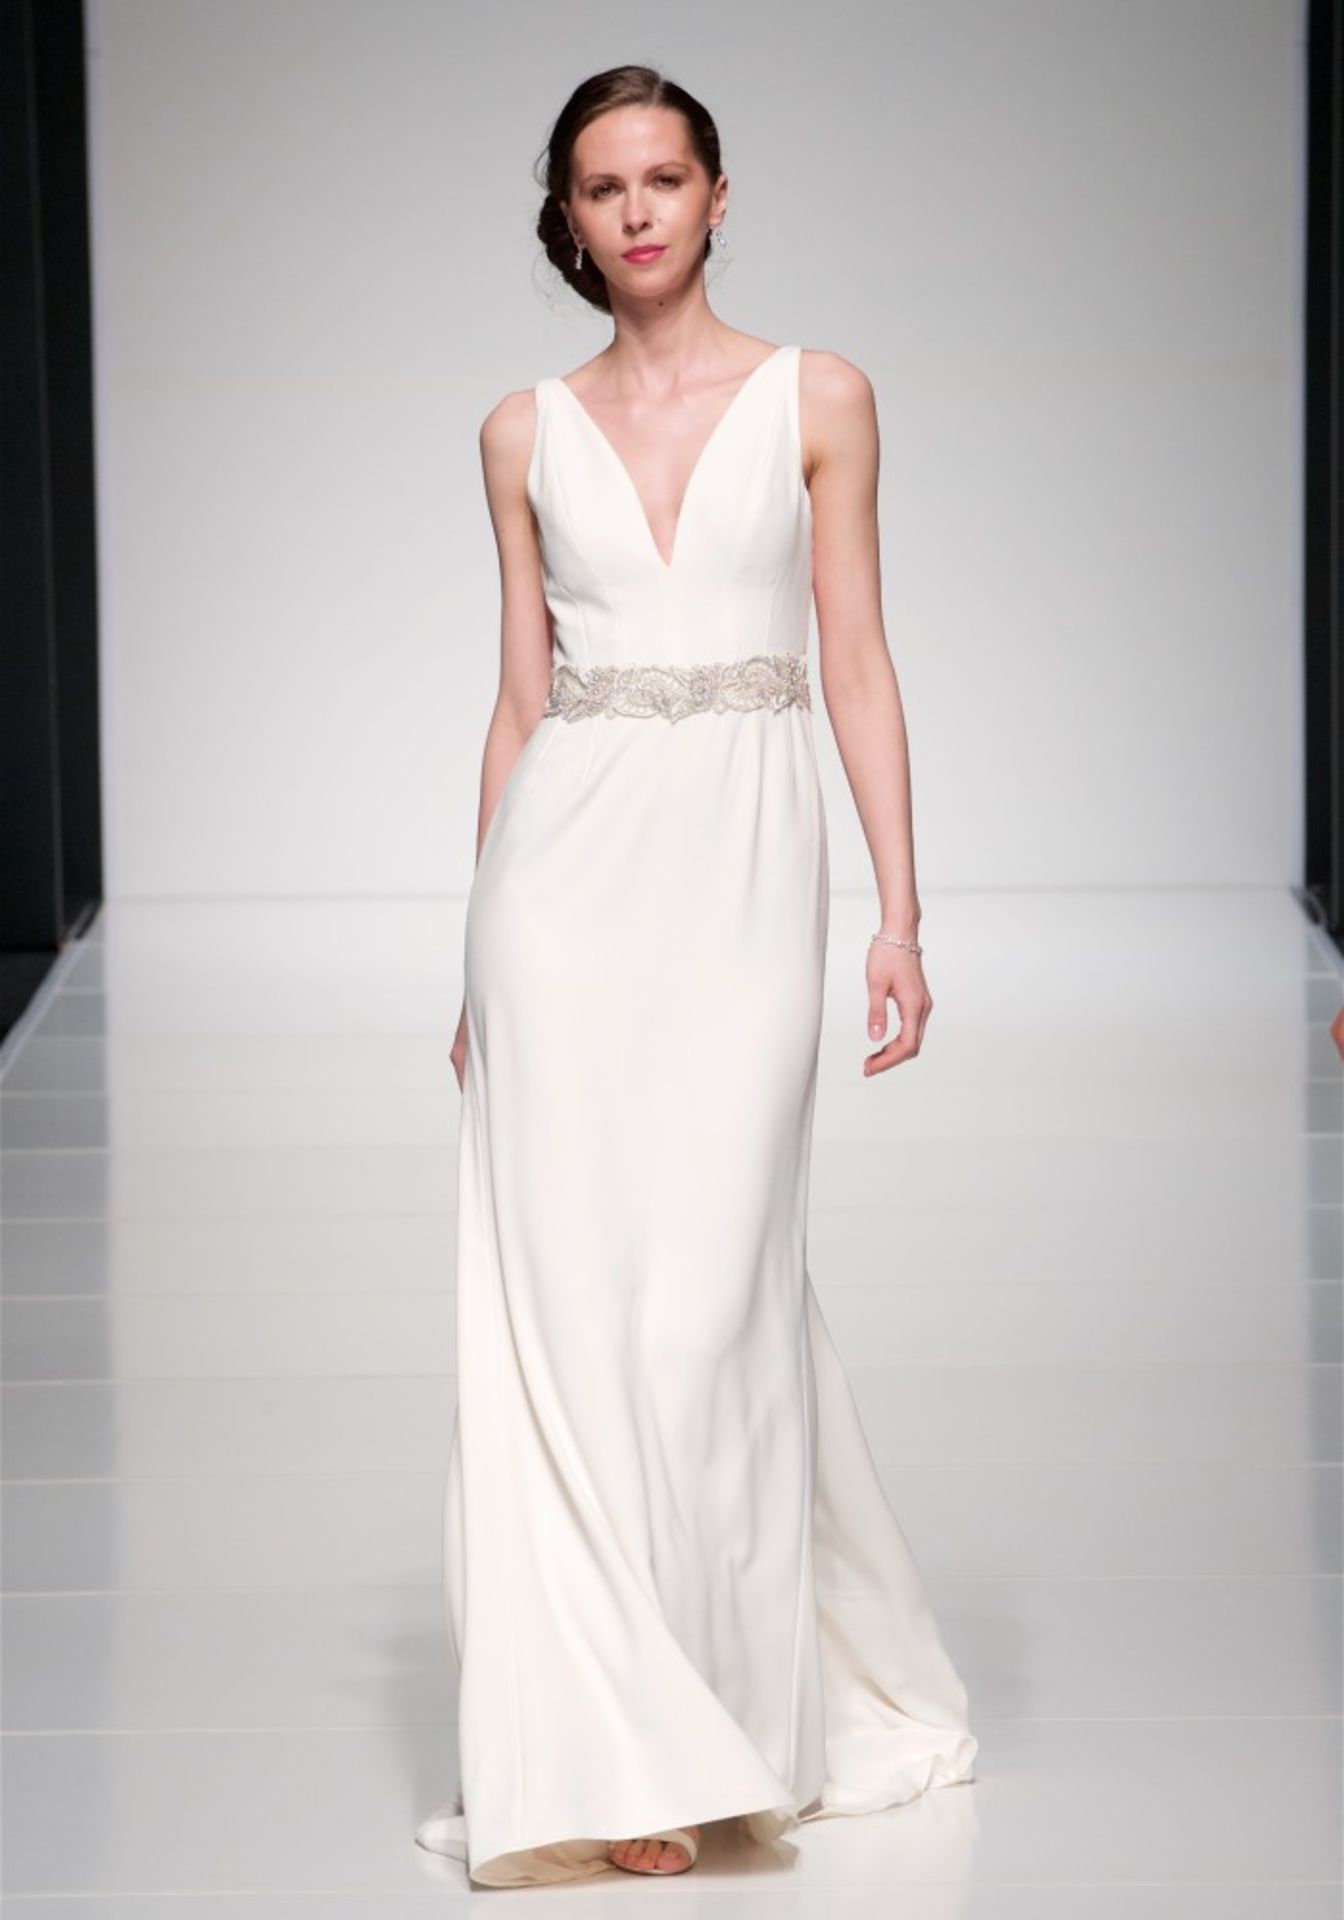 1 x ALAN HANNAH 'Jessica' Designer Crepe Wedding Dress Bridal Gown, With Embellished Belt - Made - Image 5 of 14